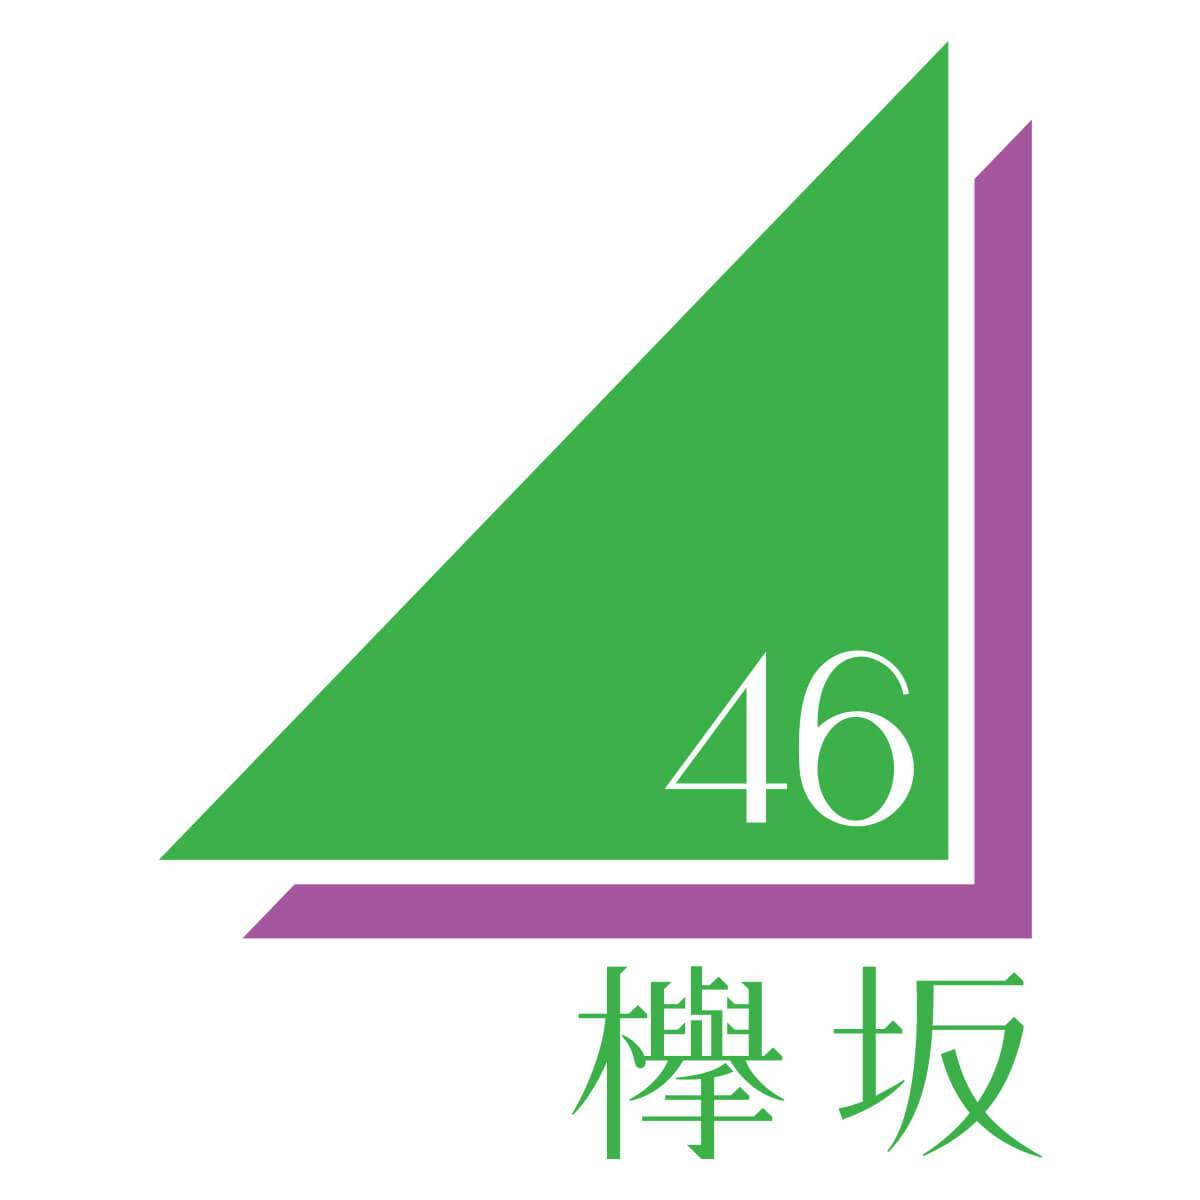 欅坂46公式サイトが今泉佑唯の活動休止を発表